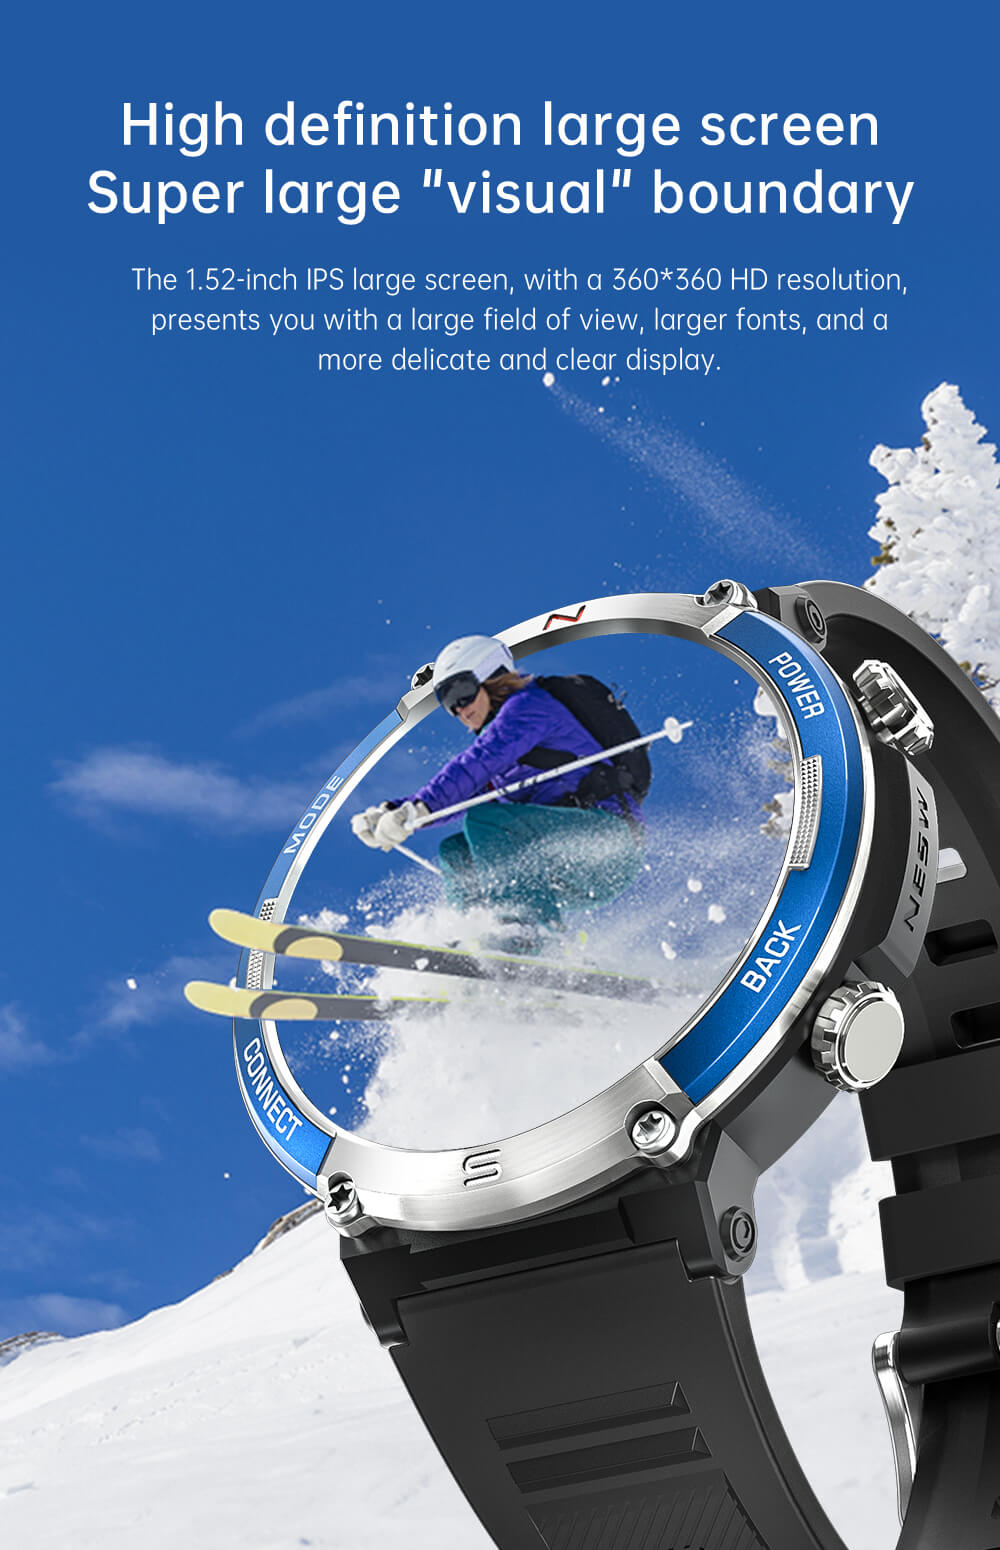 Findtime Smartwatch EX36